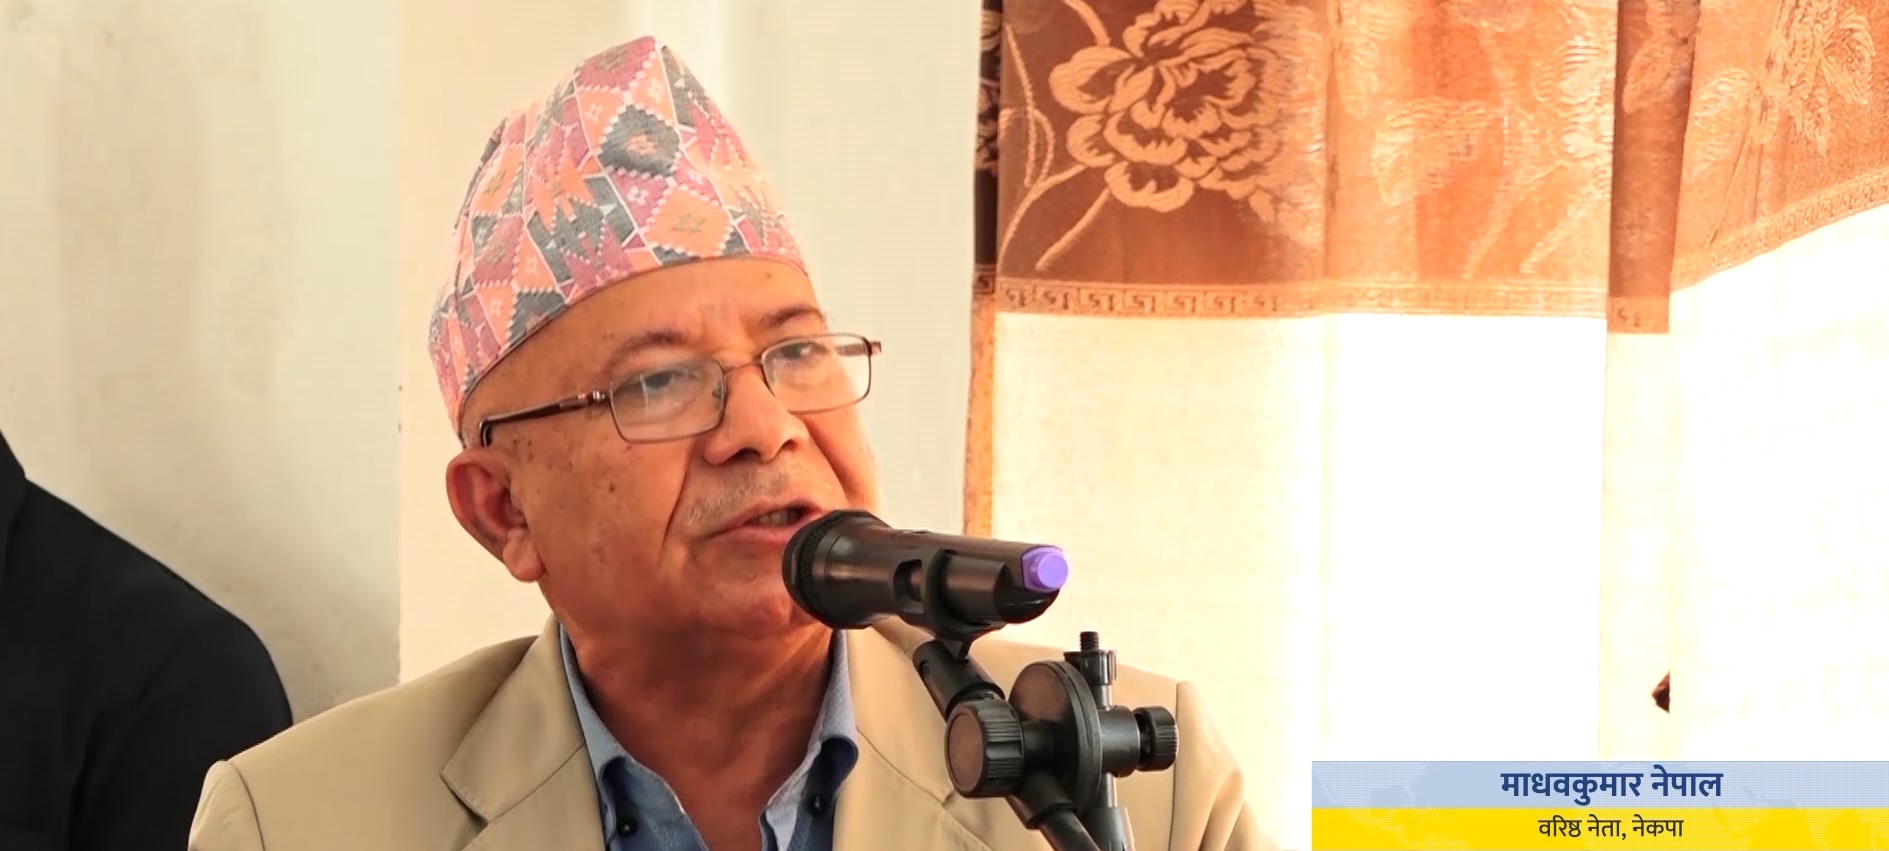 ओलीले पार्टी बहुमतको निर्णय मान्नुपर्छः नेता नेपाल